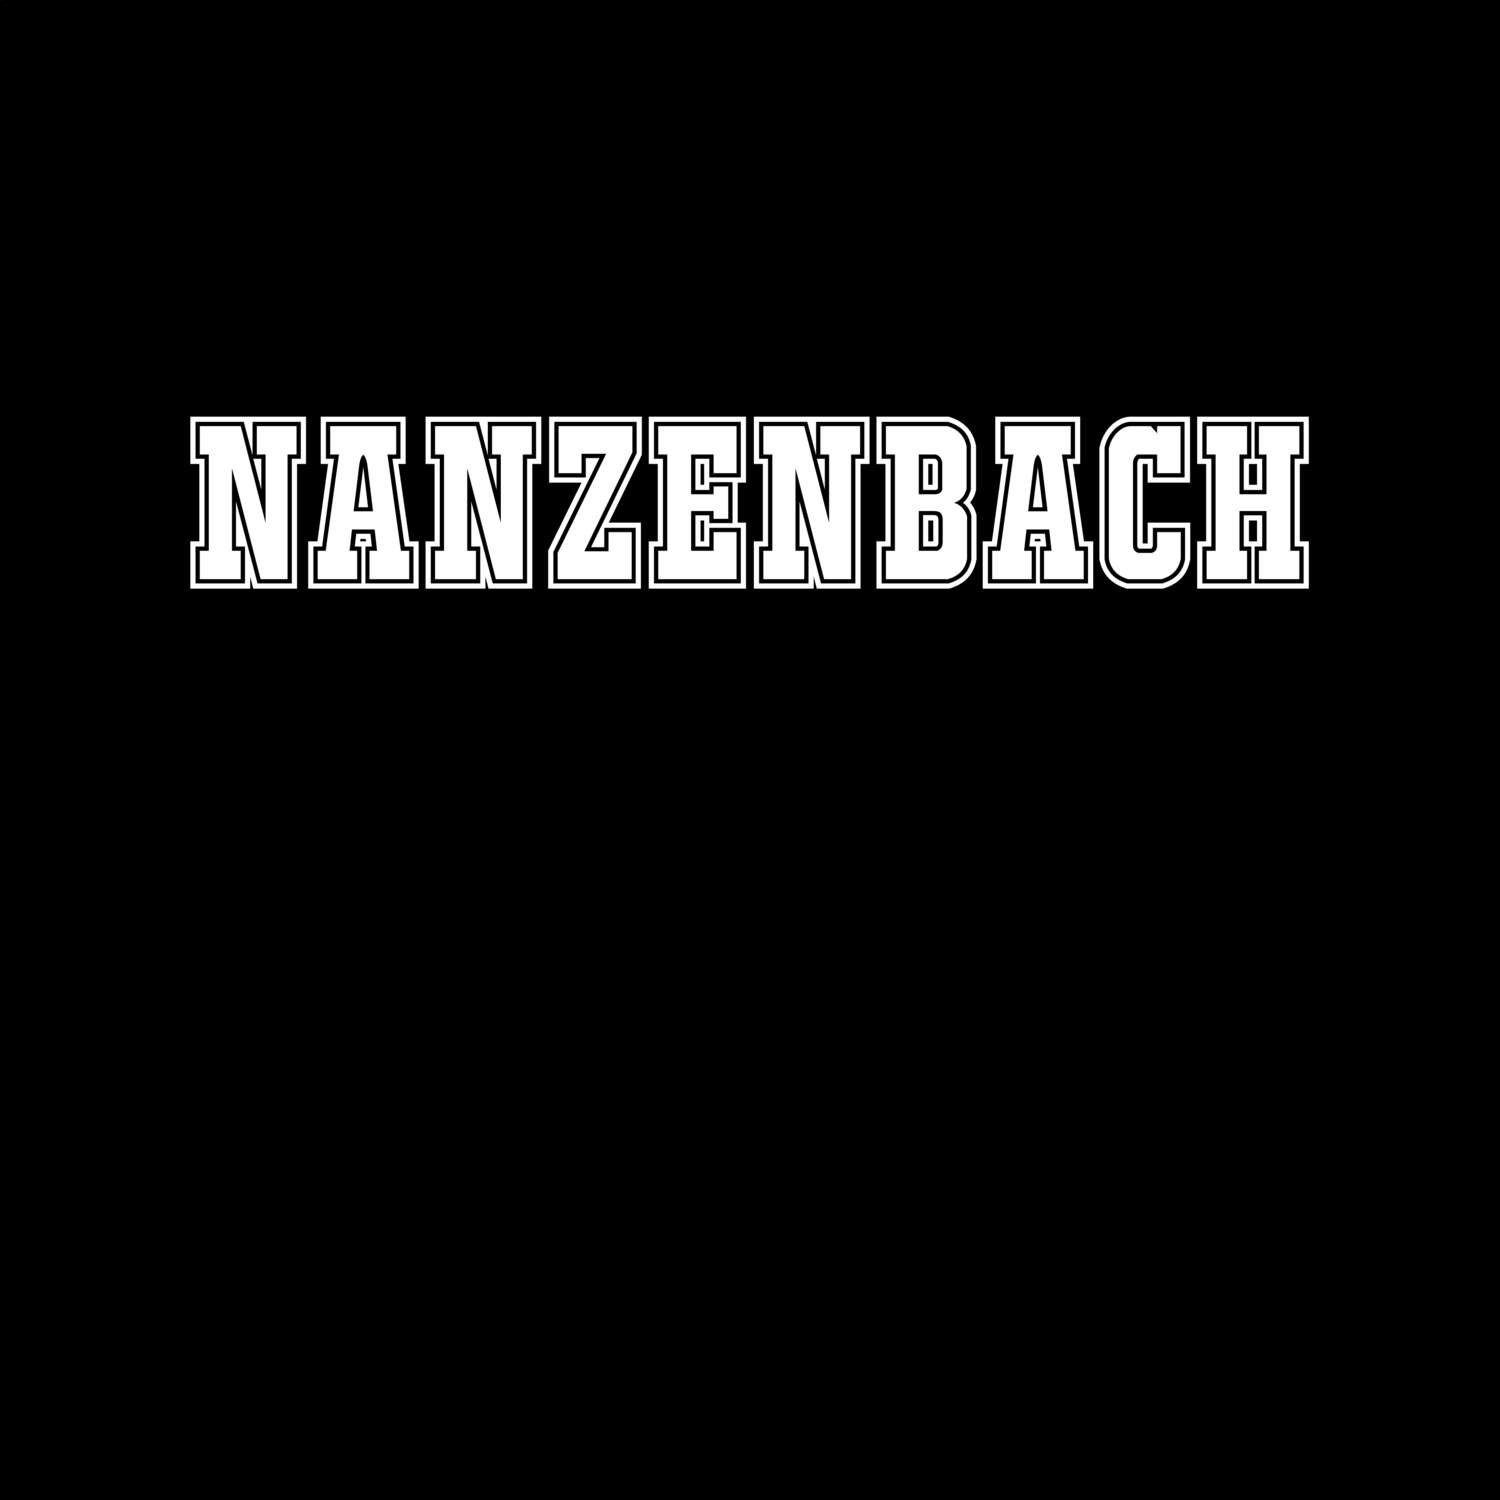 Nanzenbach T-Shirt »Classic«